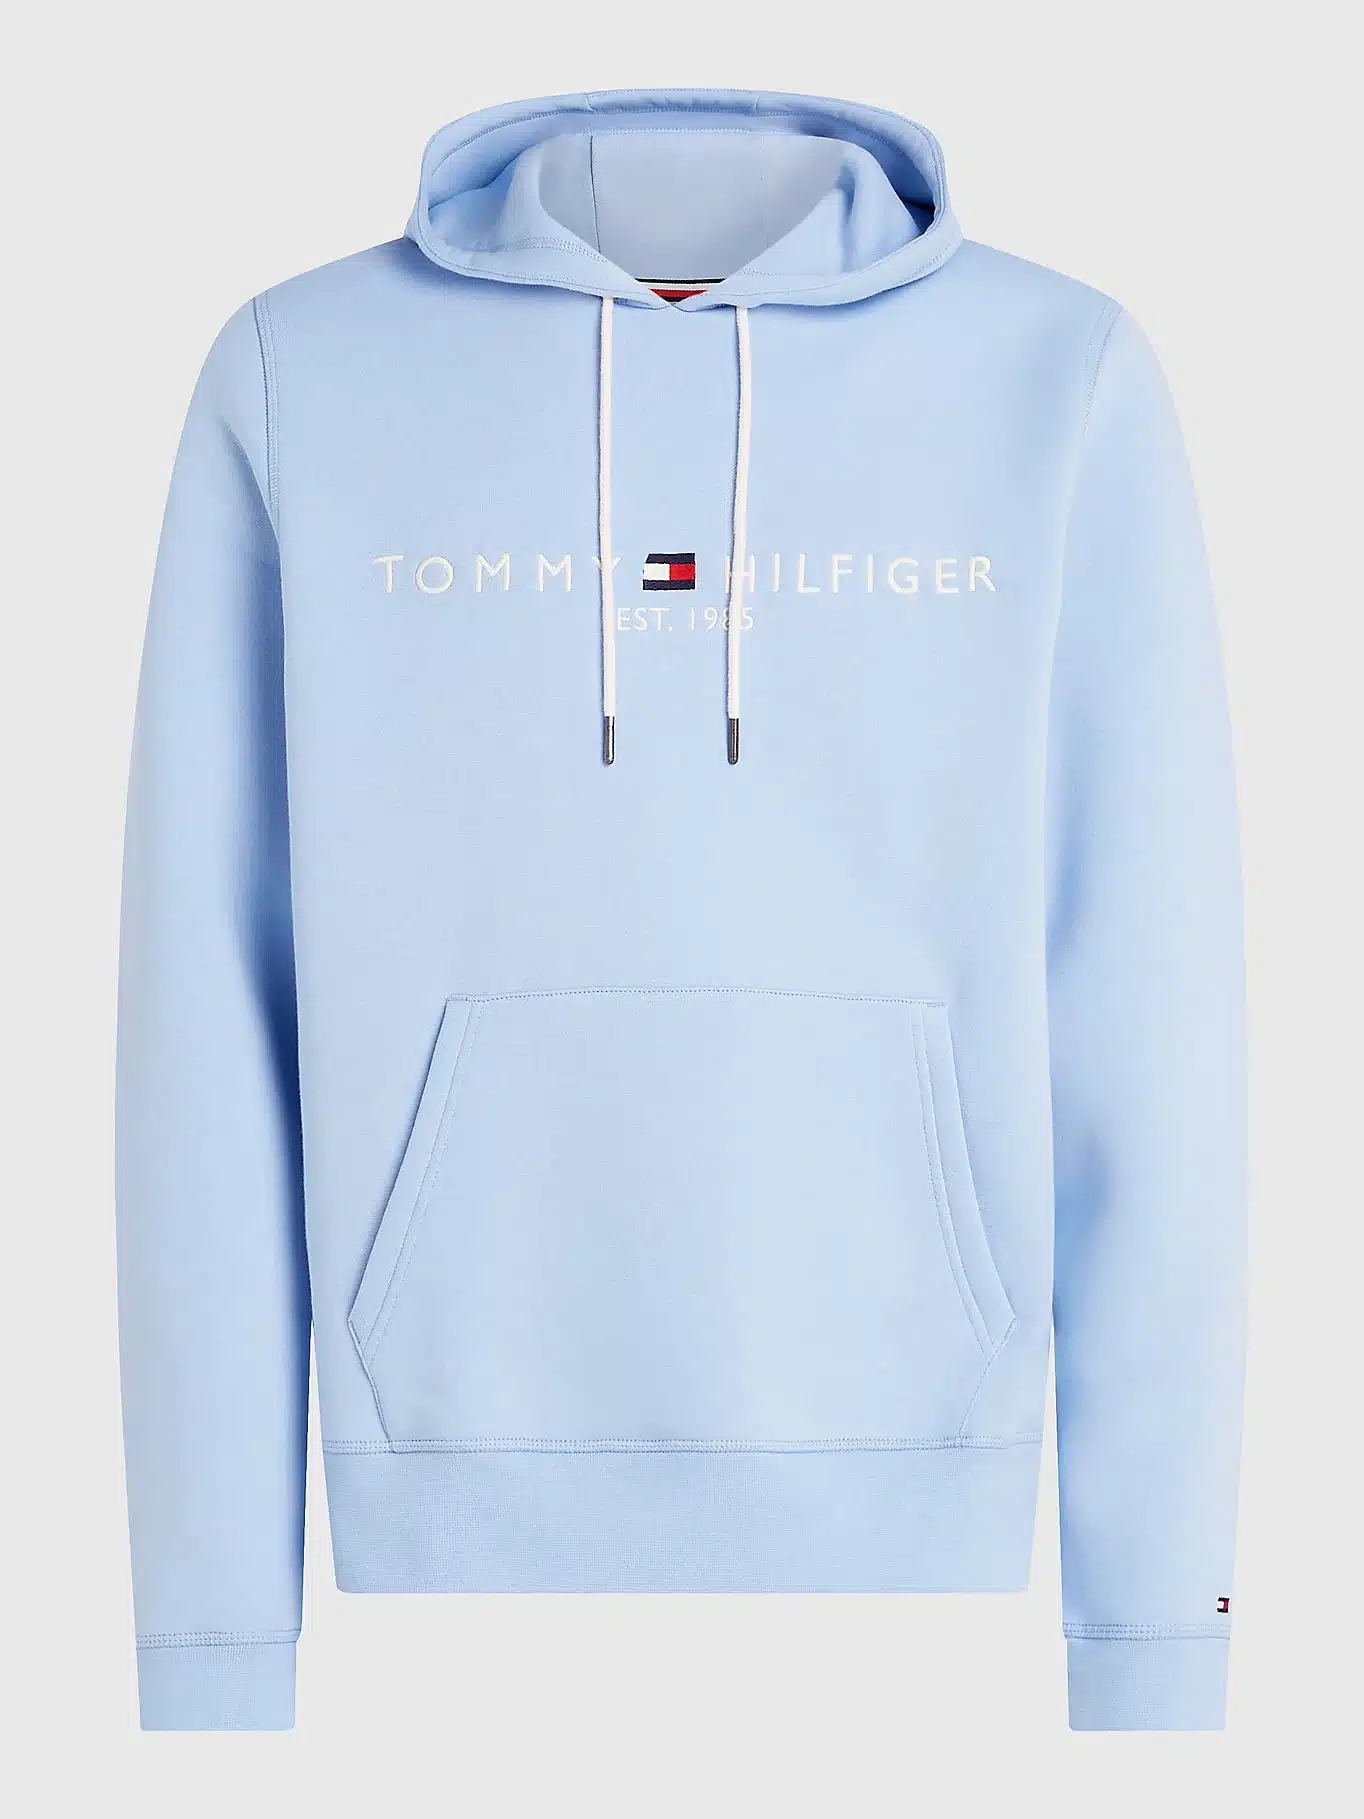 Buy Tommy Hilfiger Logo Hoody Vessel Blue - Scandinavian Fashion